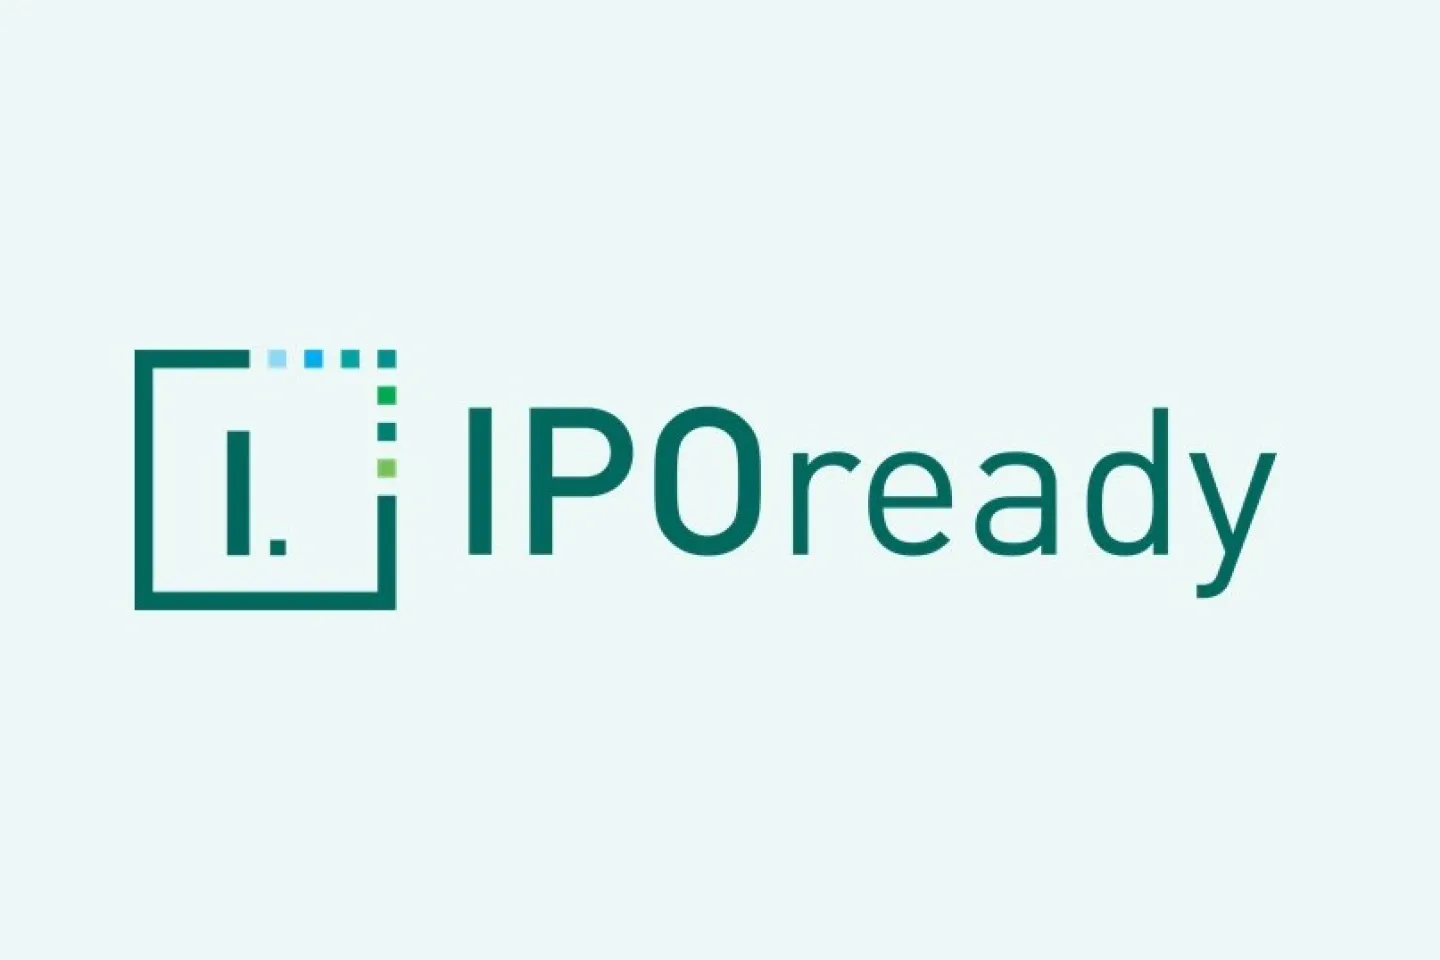 IPOready logo green 3x2 ratio